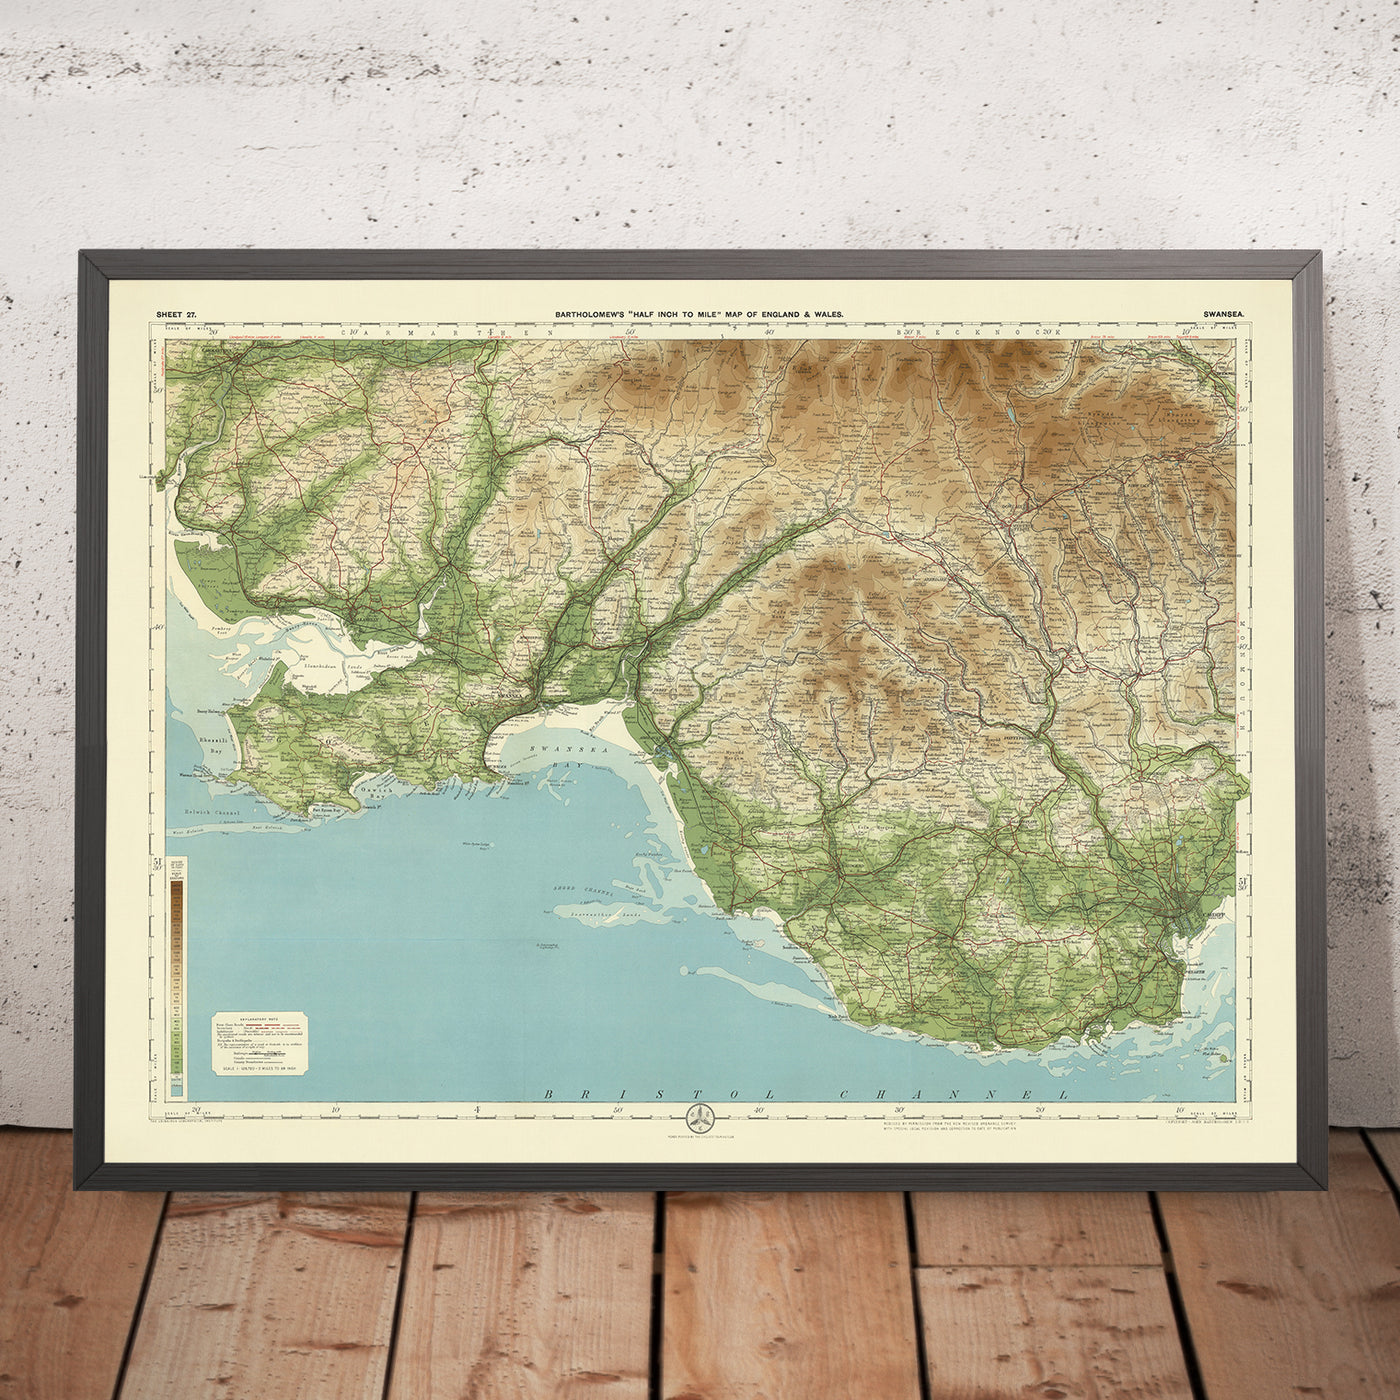 Antiguo mapa OS de Swansea, Gales del Sur por Bartholomew, 1901: Swansea, Neath, Carmarthen, Brecon, Tawe, Brecon Beacons